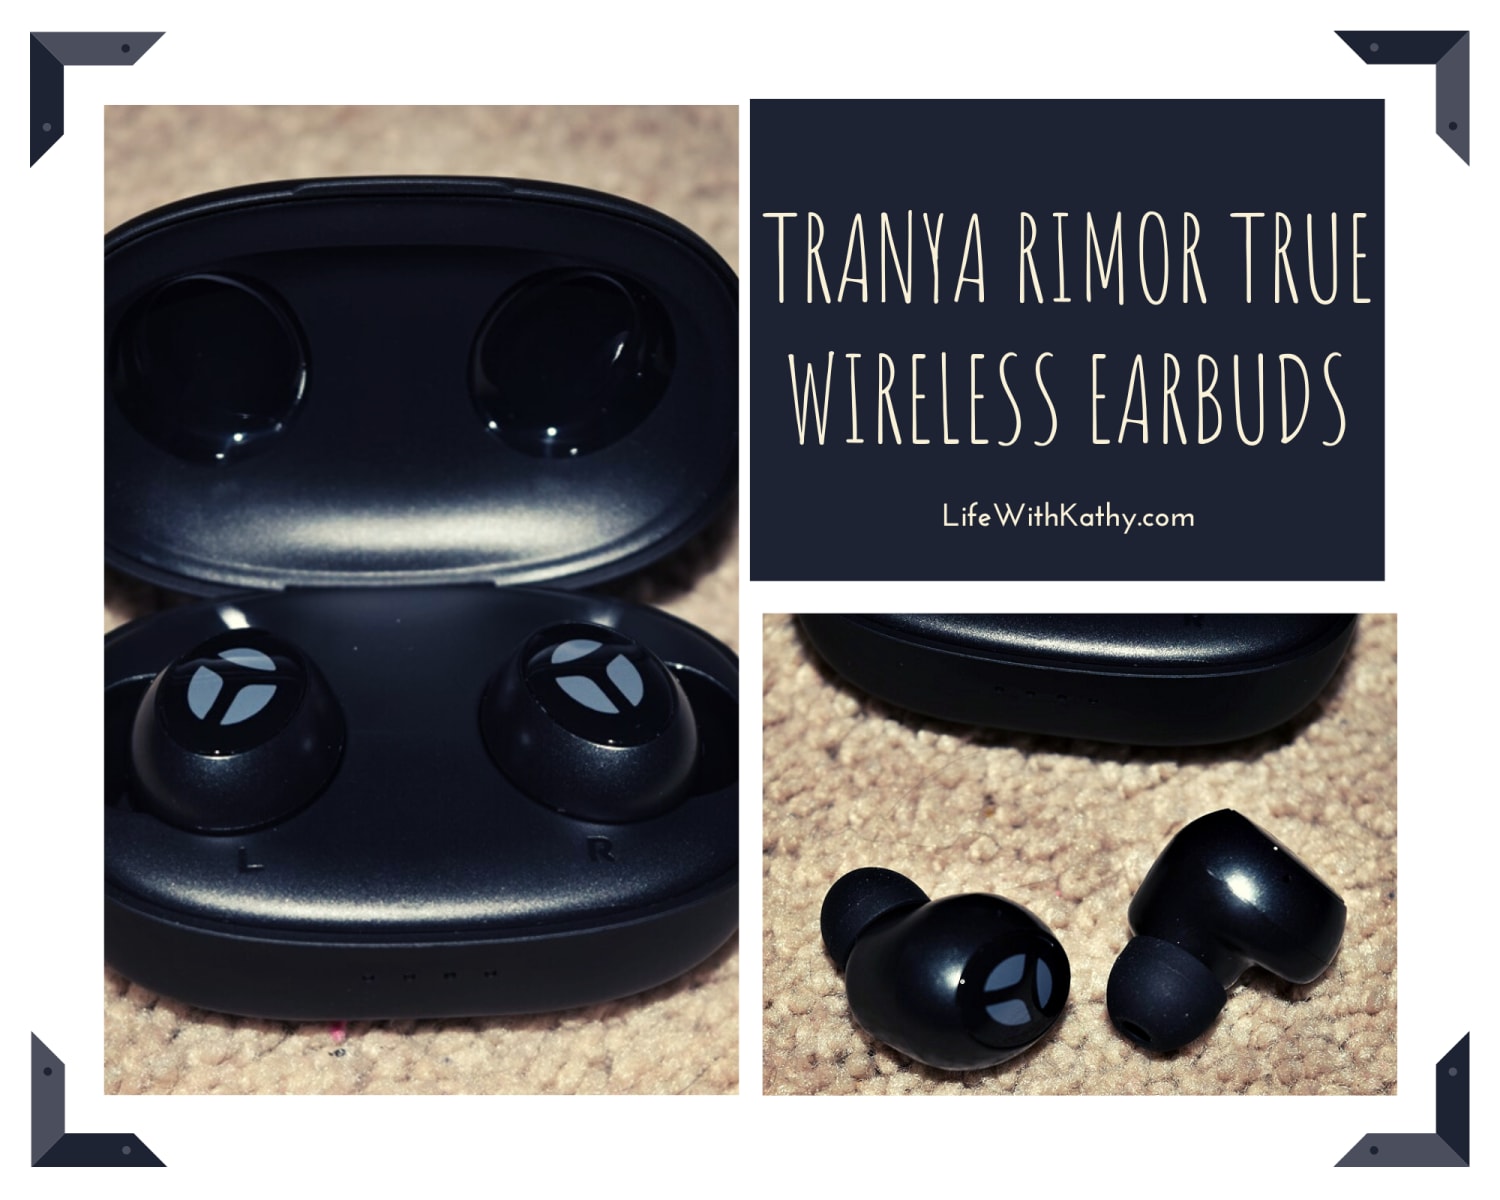 Tranya Rimor True Wireless Earbuds